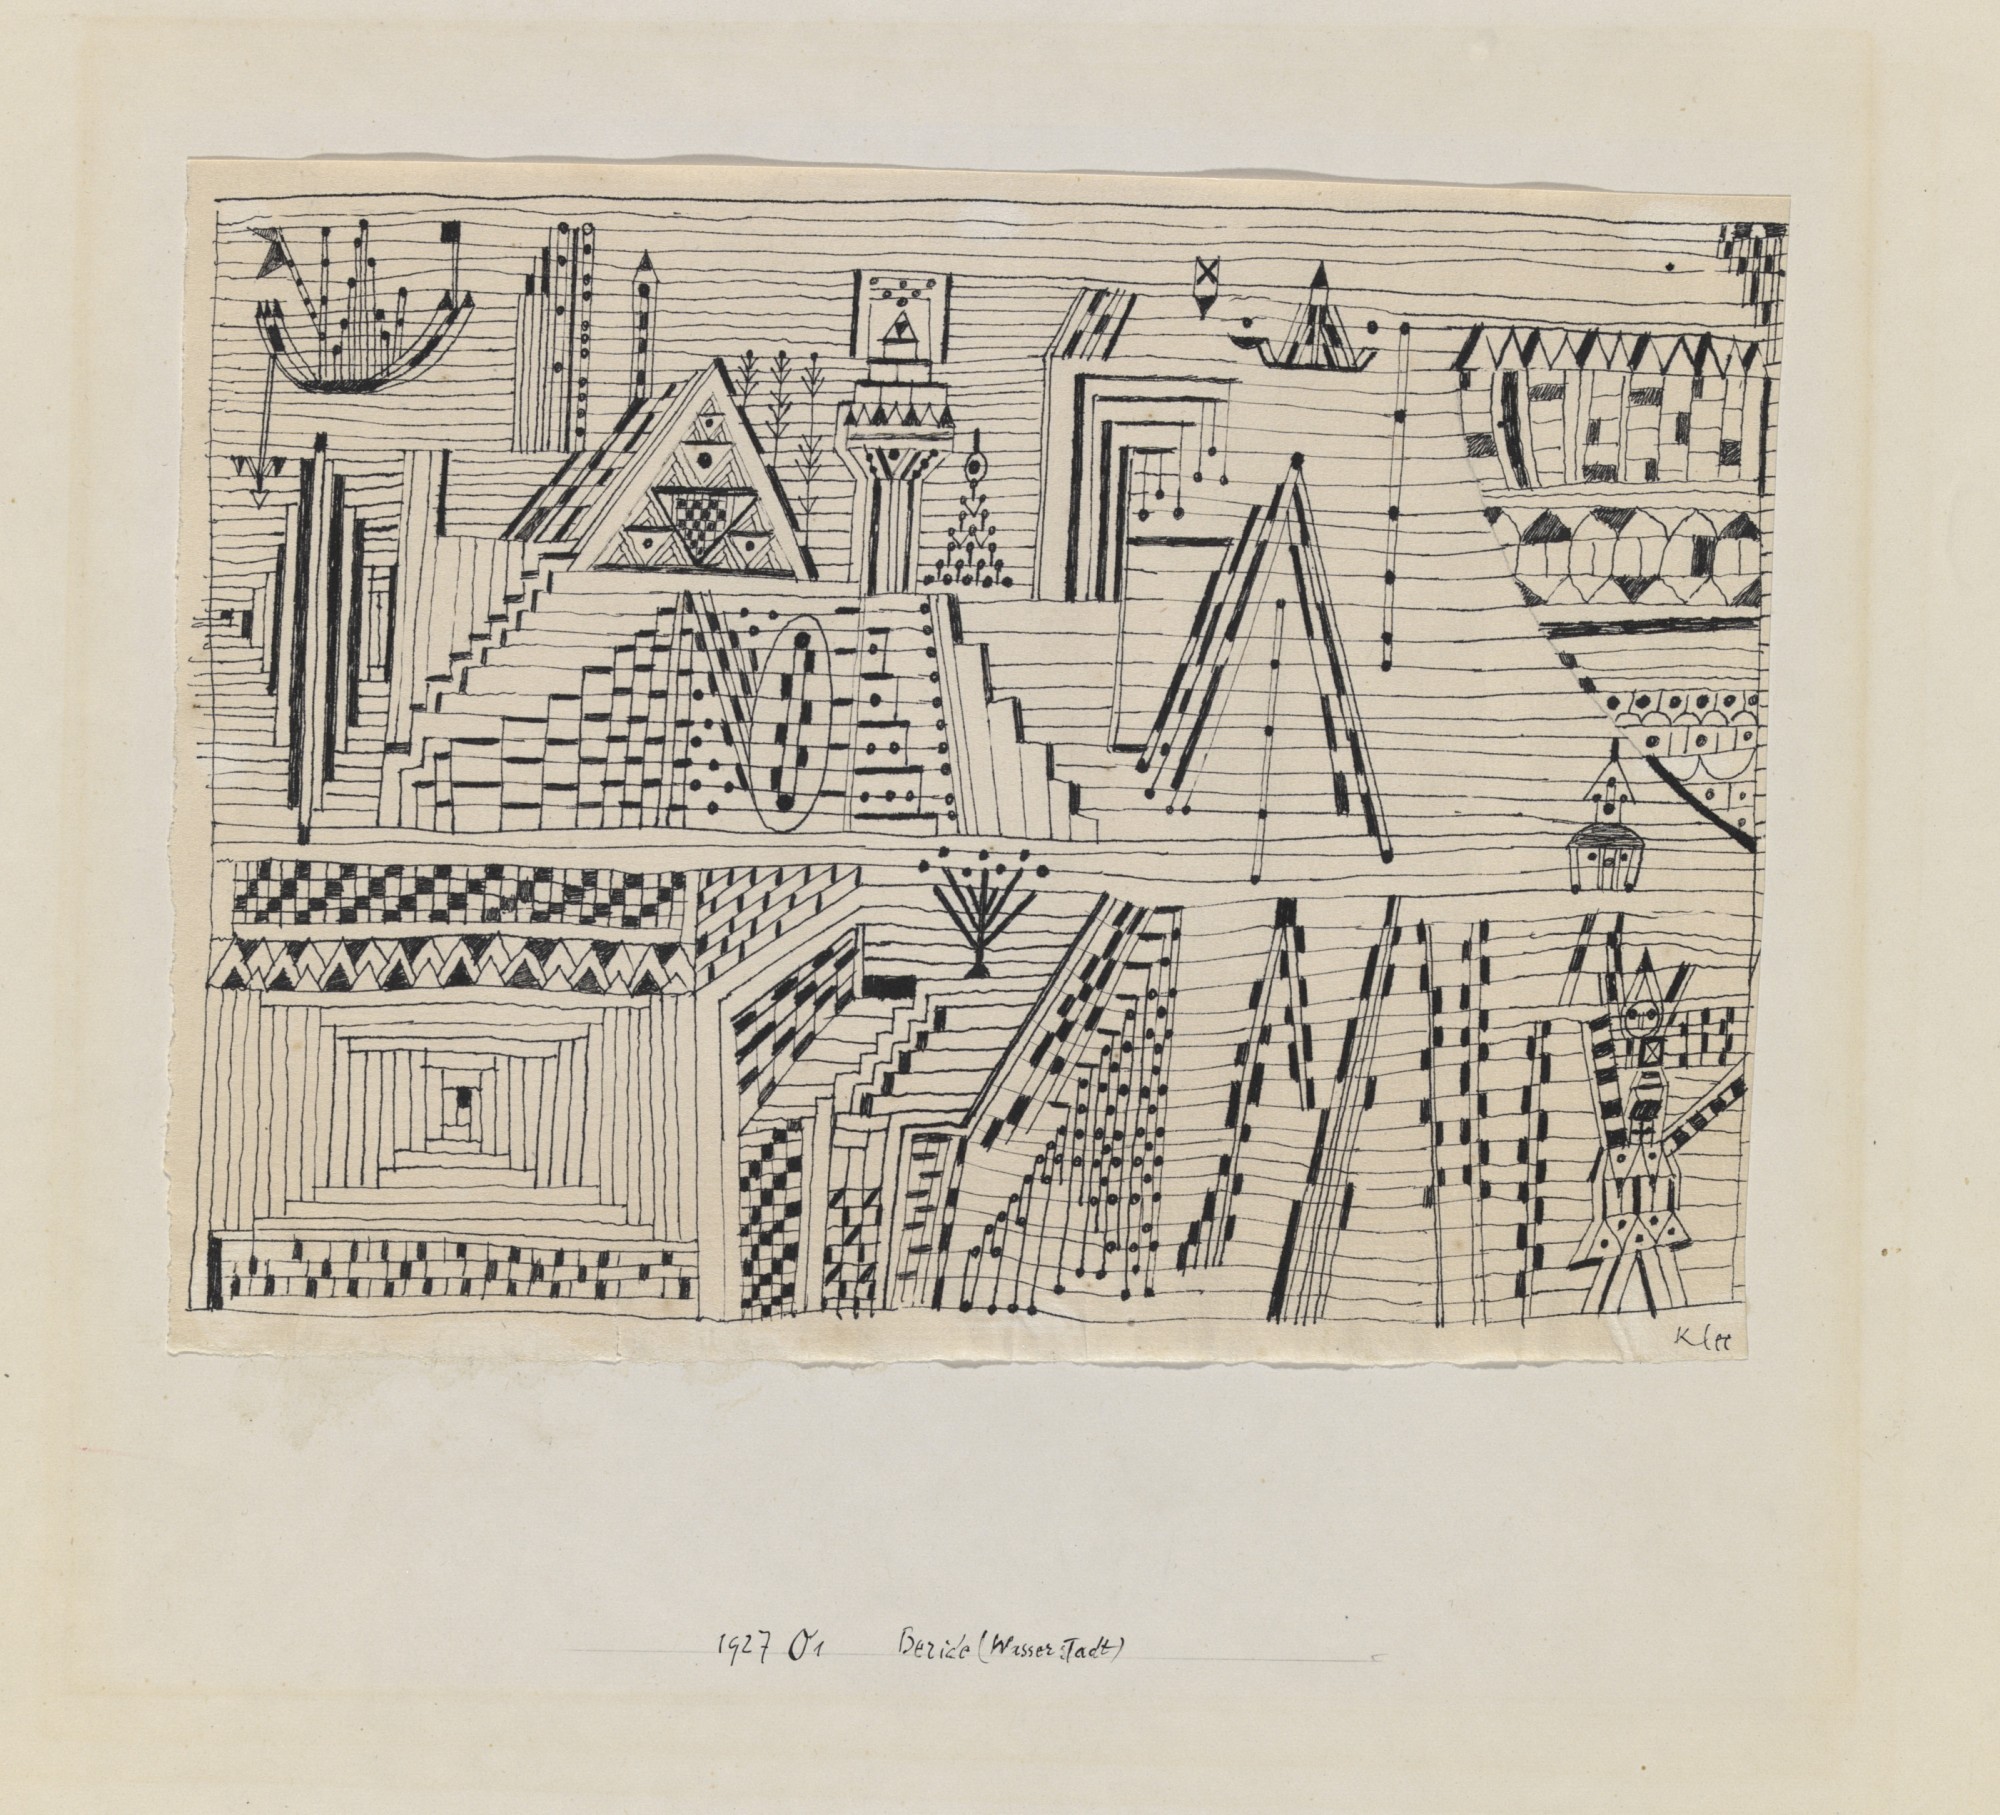 Paul Klee, "Beride (Wasserstadt)", 1927, 51